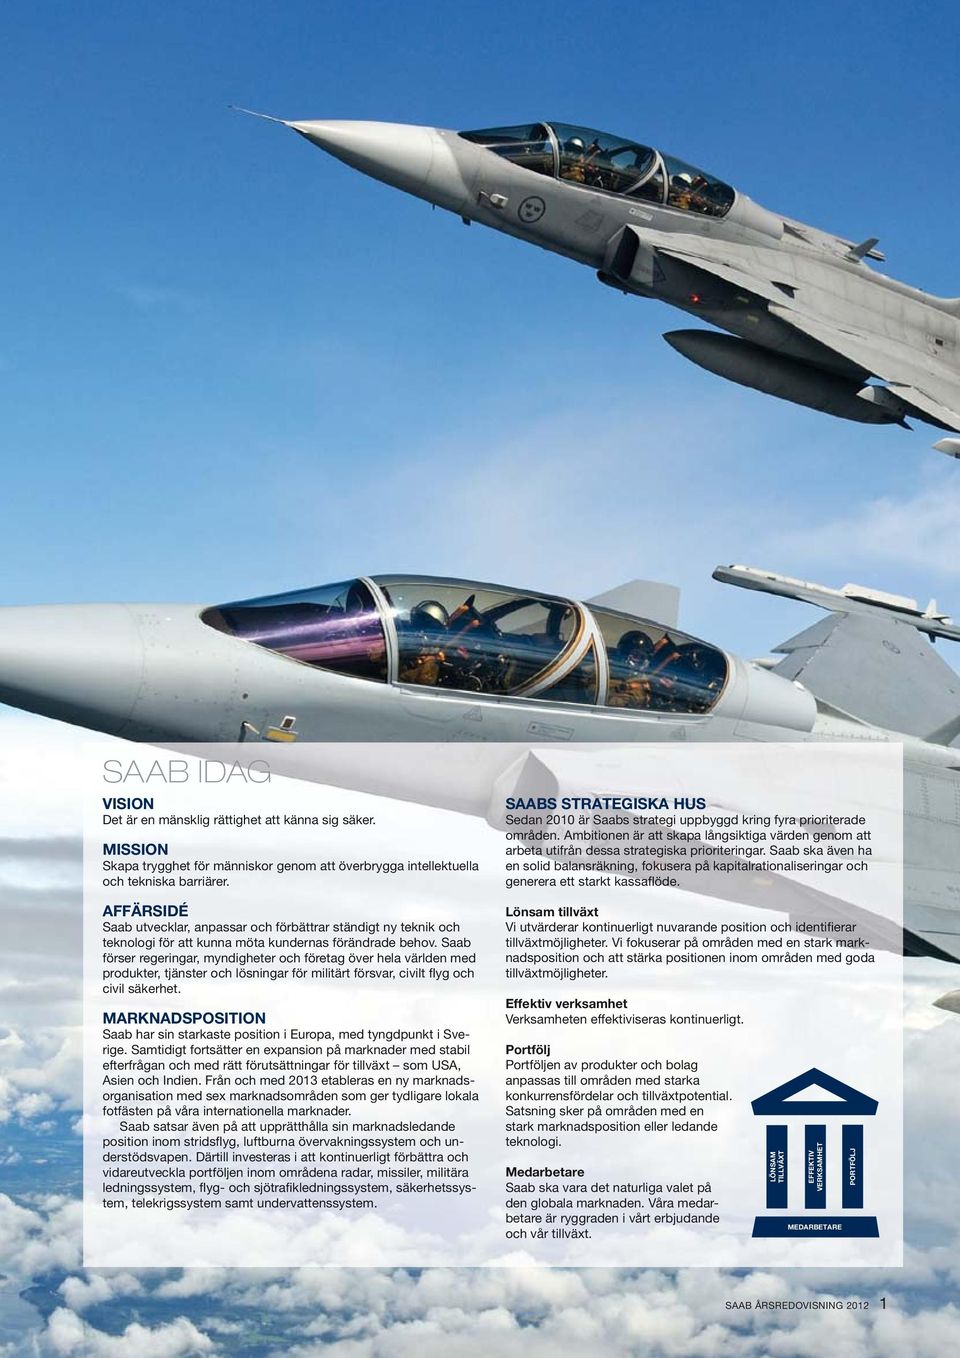 Saab förser regeringar, myndigheter och företag över hela världen med produkter, tjänster och lösningar för militärt försvar, civilt flyg och civil säkerhet.